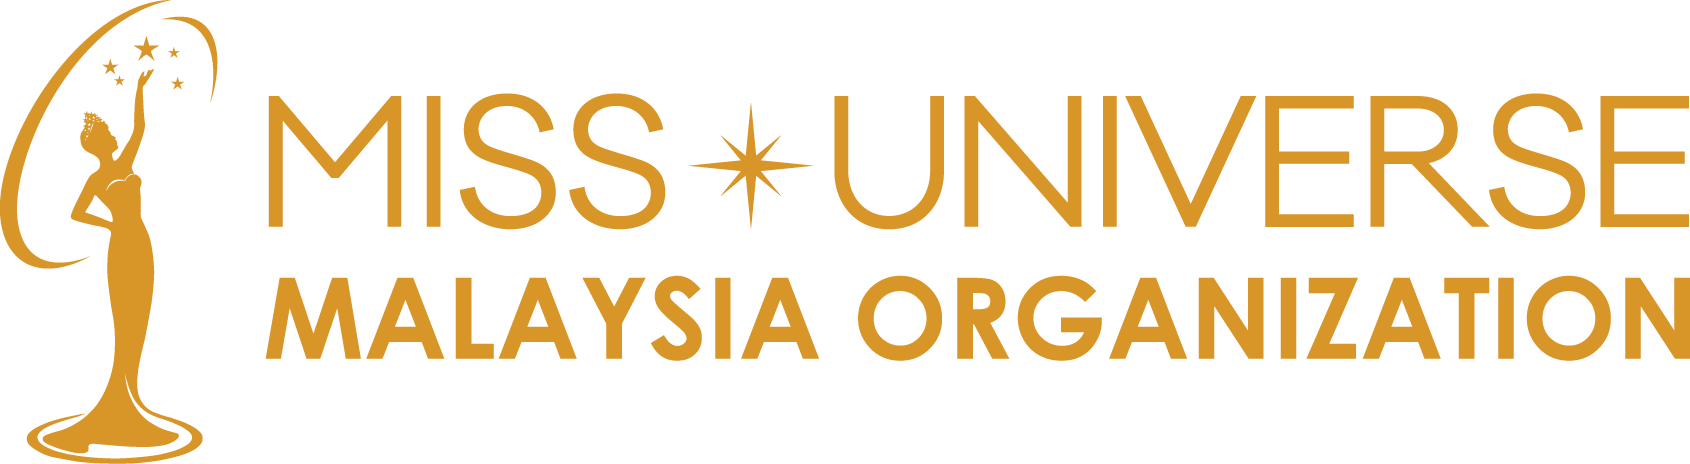 Miss Universe Malaysia Organization